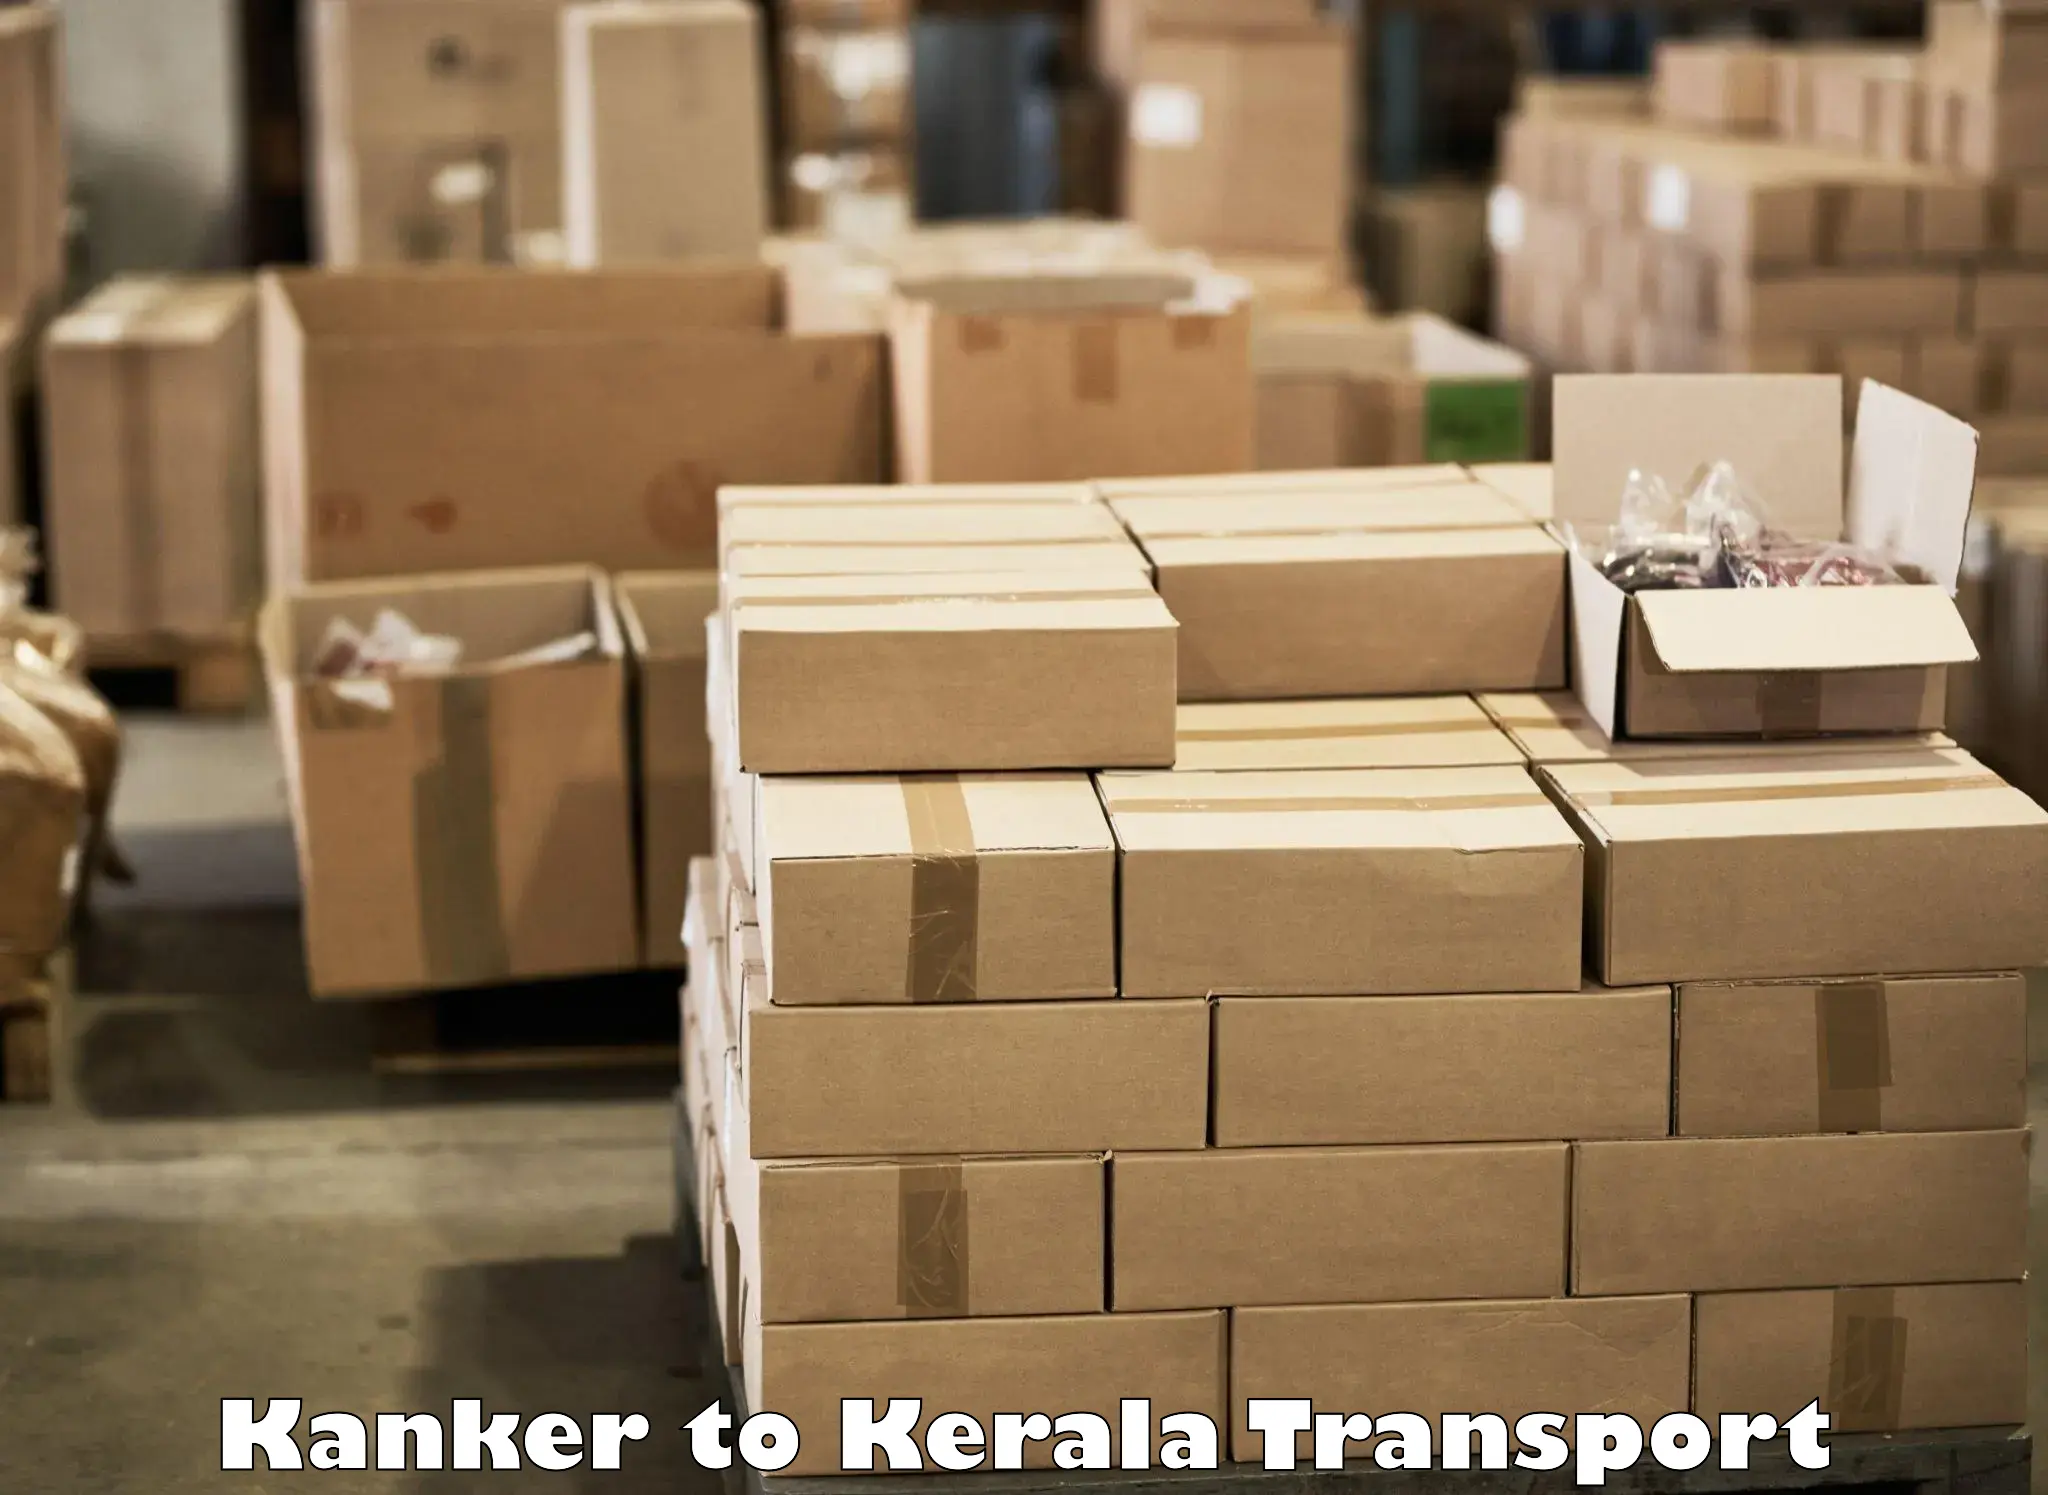 Interstate transport services Kanker to Kasaragod